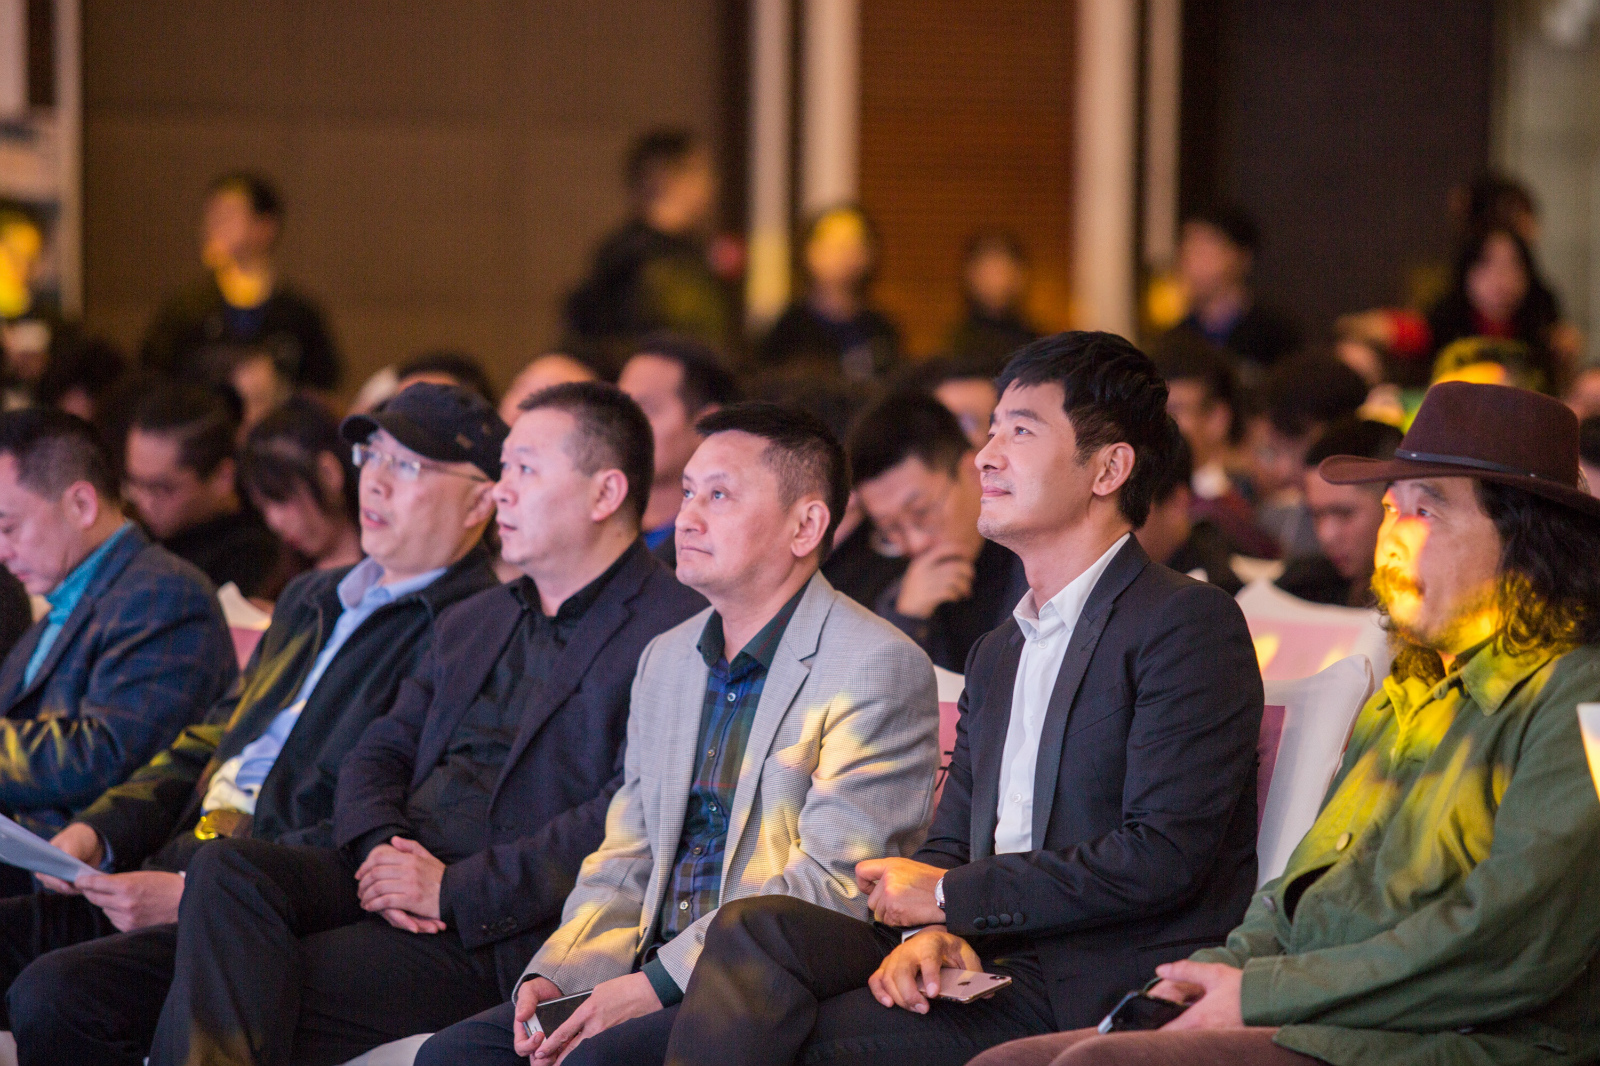 郭晓东出席重庆青年电影展闭幕式 发声鼓励青年电影人